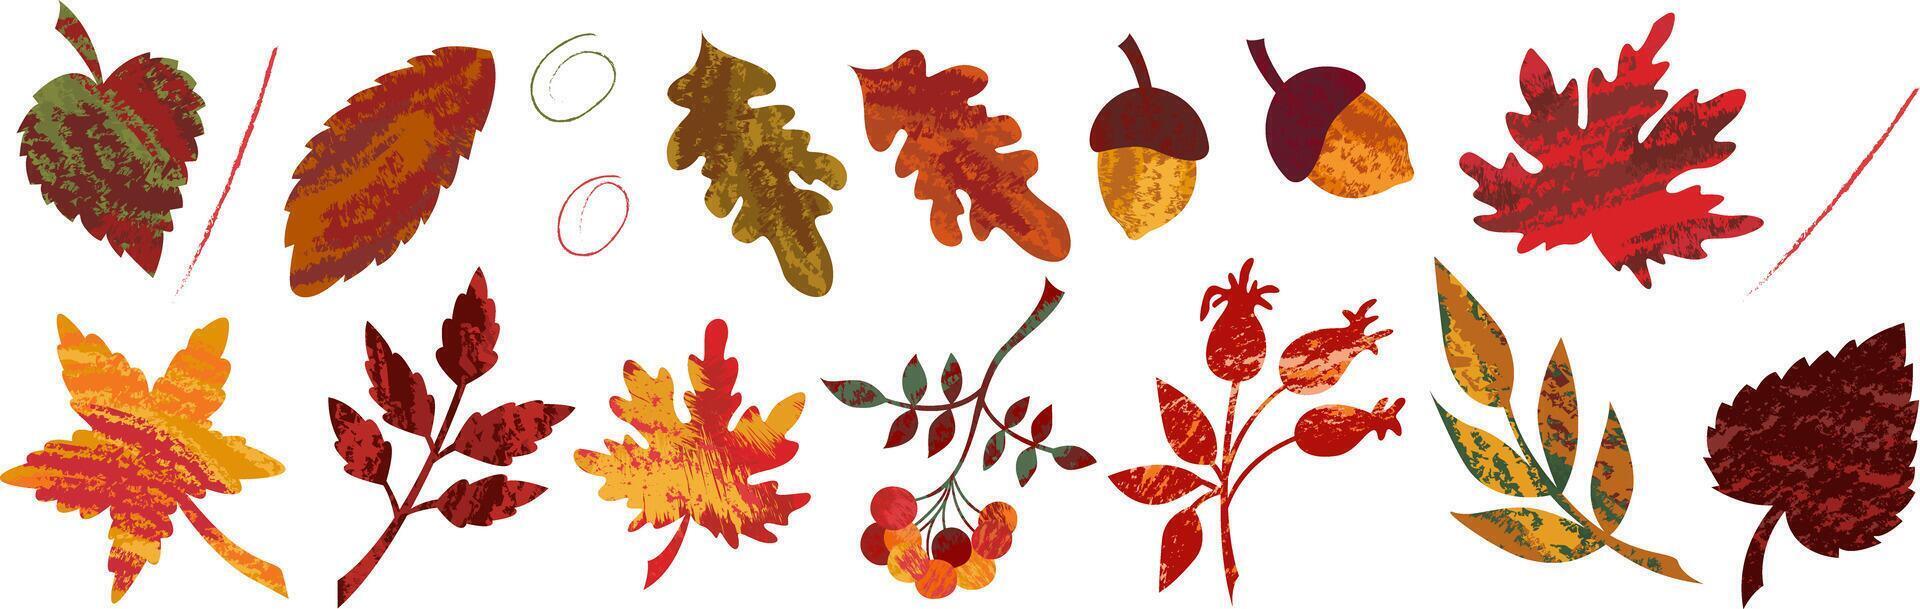 Herbst einstellen von isoliert Elemente von abstrakt Textur Blätter von Ahorn, Eiche und Eberesche Beeren. Textur handgemalt saisonal Abbildungen zum Herbst Ferien Design. vektor